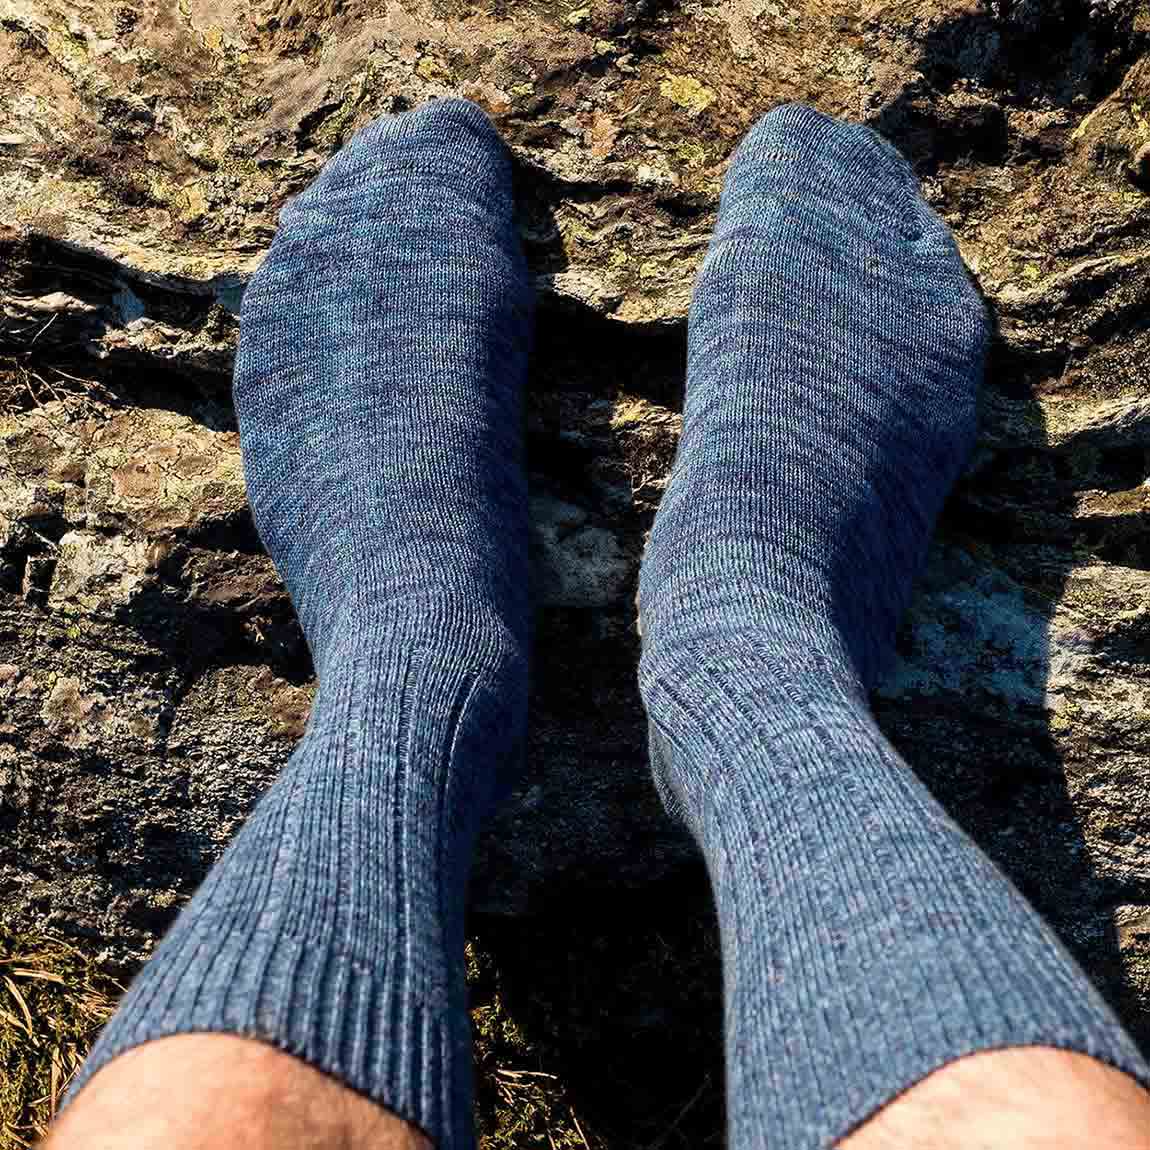 Night blue melange socks